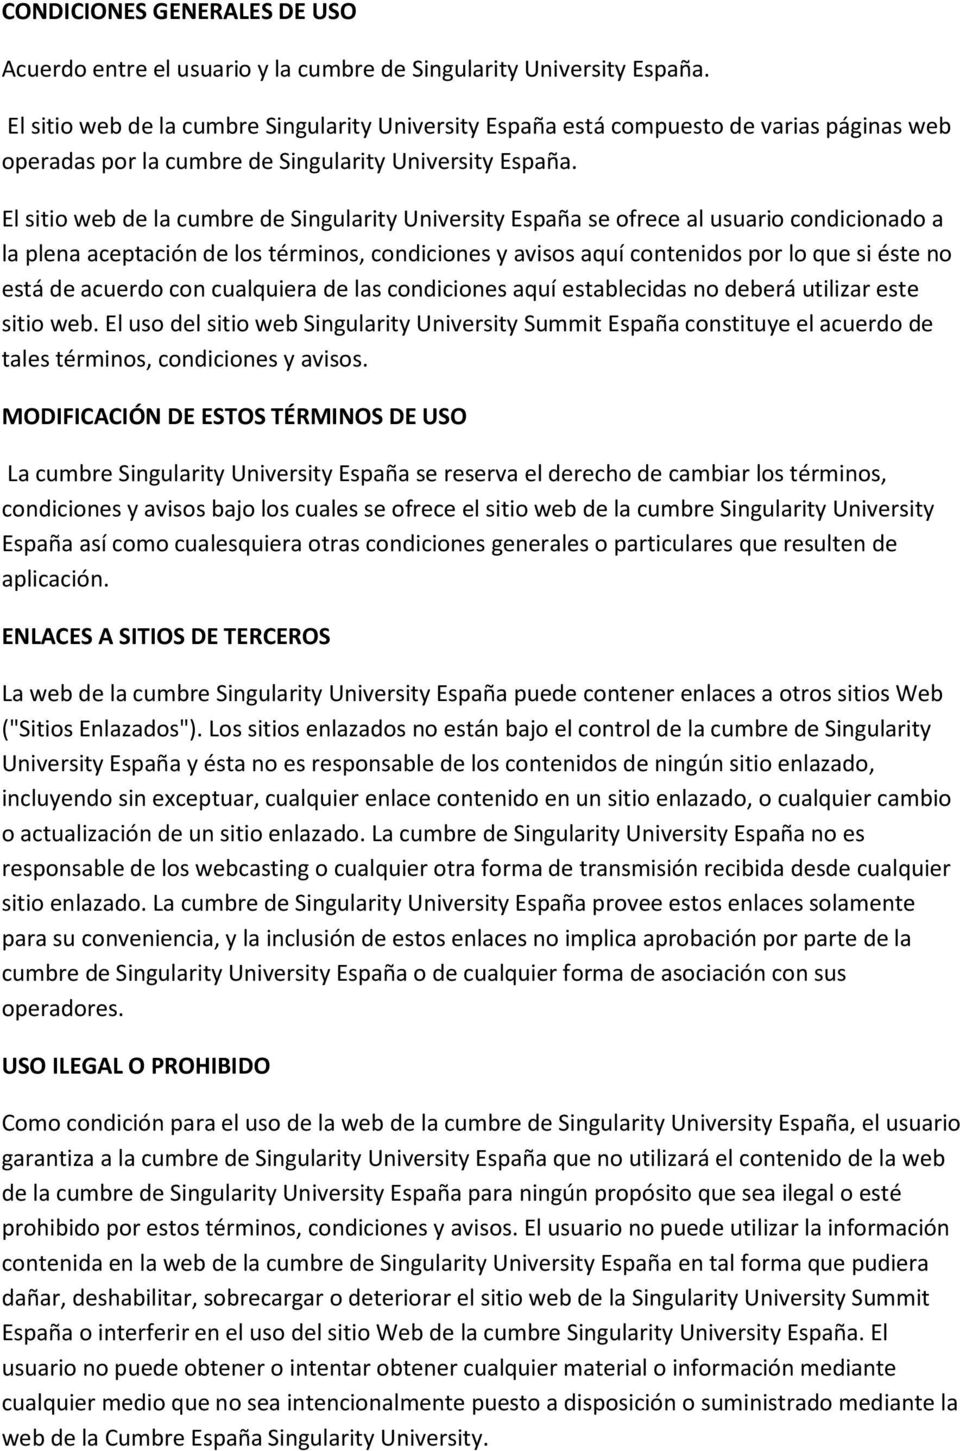 El sitio web de la cumbre de Singularity University España se ofrece al usuario condicionado a la plena aceptación de los términos, condiciones y avisos aquí contenidos por lo que si éste no está de